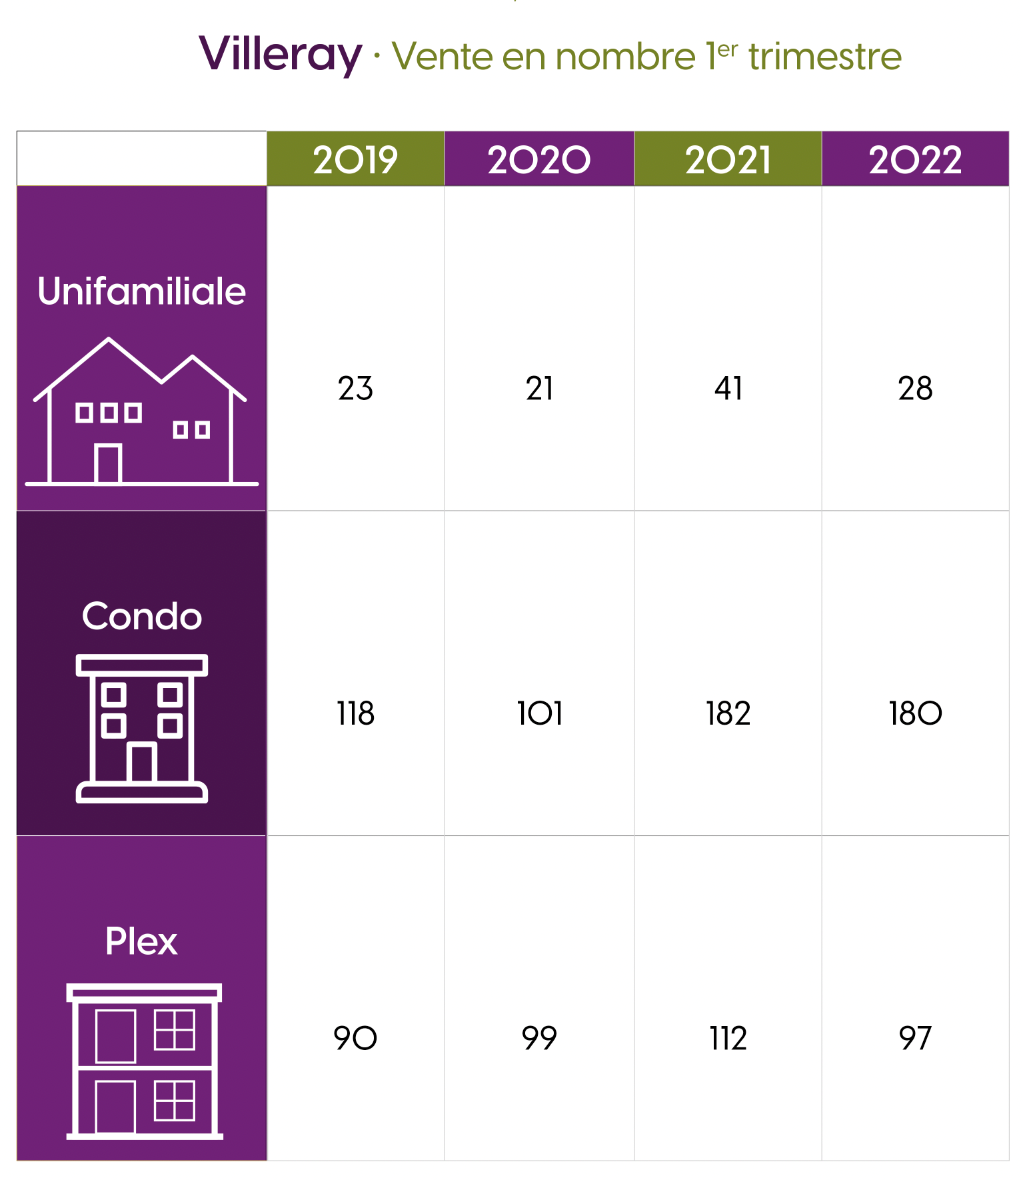 Nombre de vente en 2019-2020-2021 et 2022 dans Villeray